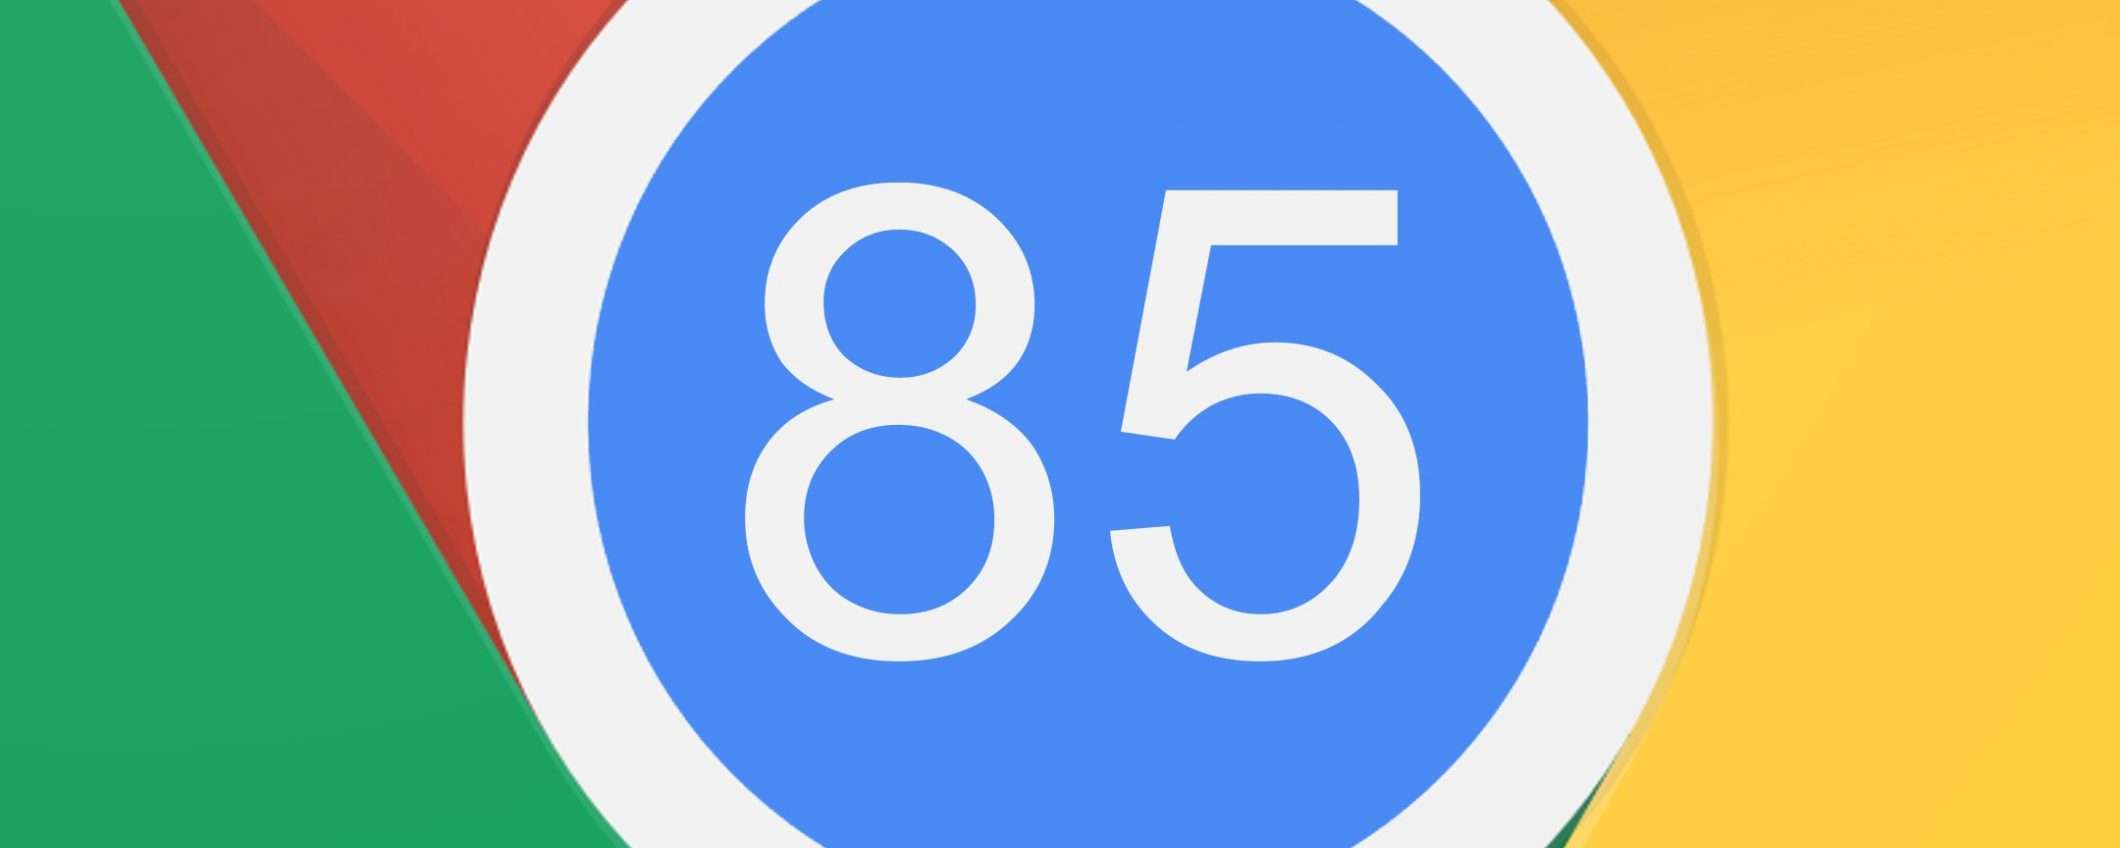 Google Chrome 85: novità nella gestione delle tab